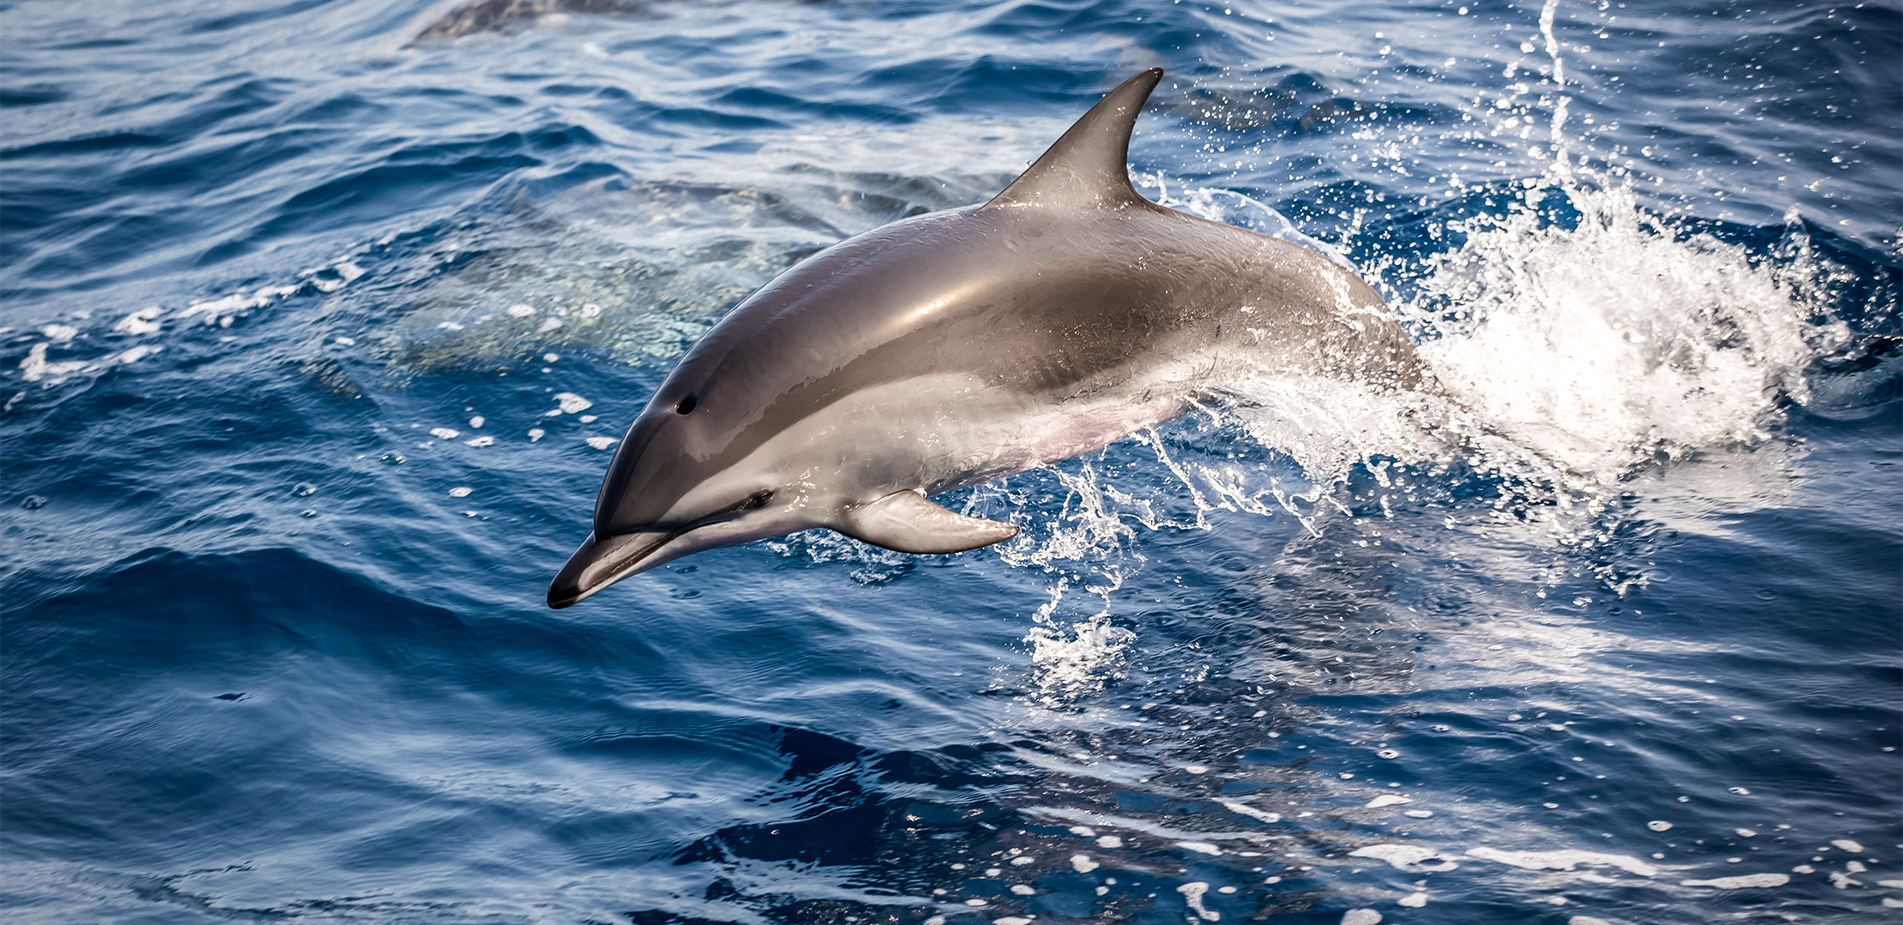 Το σεξουαλικό σκάνδαλο με ένα δελφίνι που εξόργισε μια χώρα – Η ιστορία του ακτιβιστή που πήγε σε δίκη